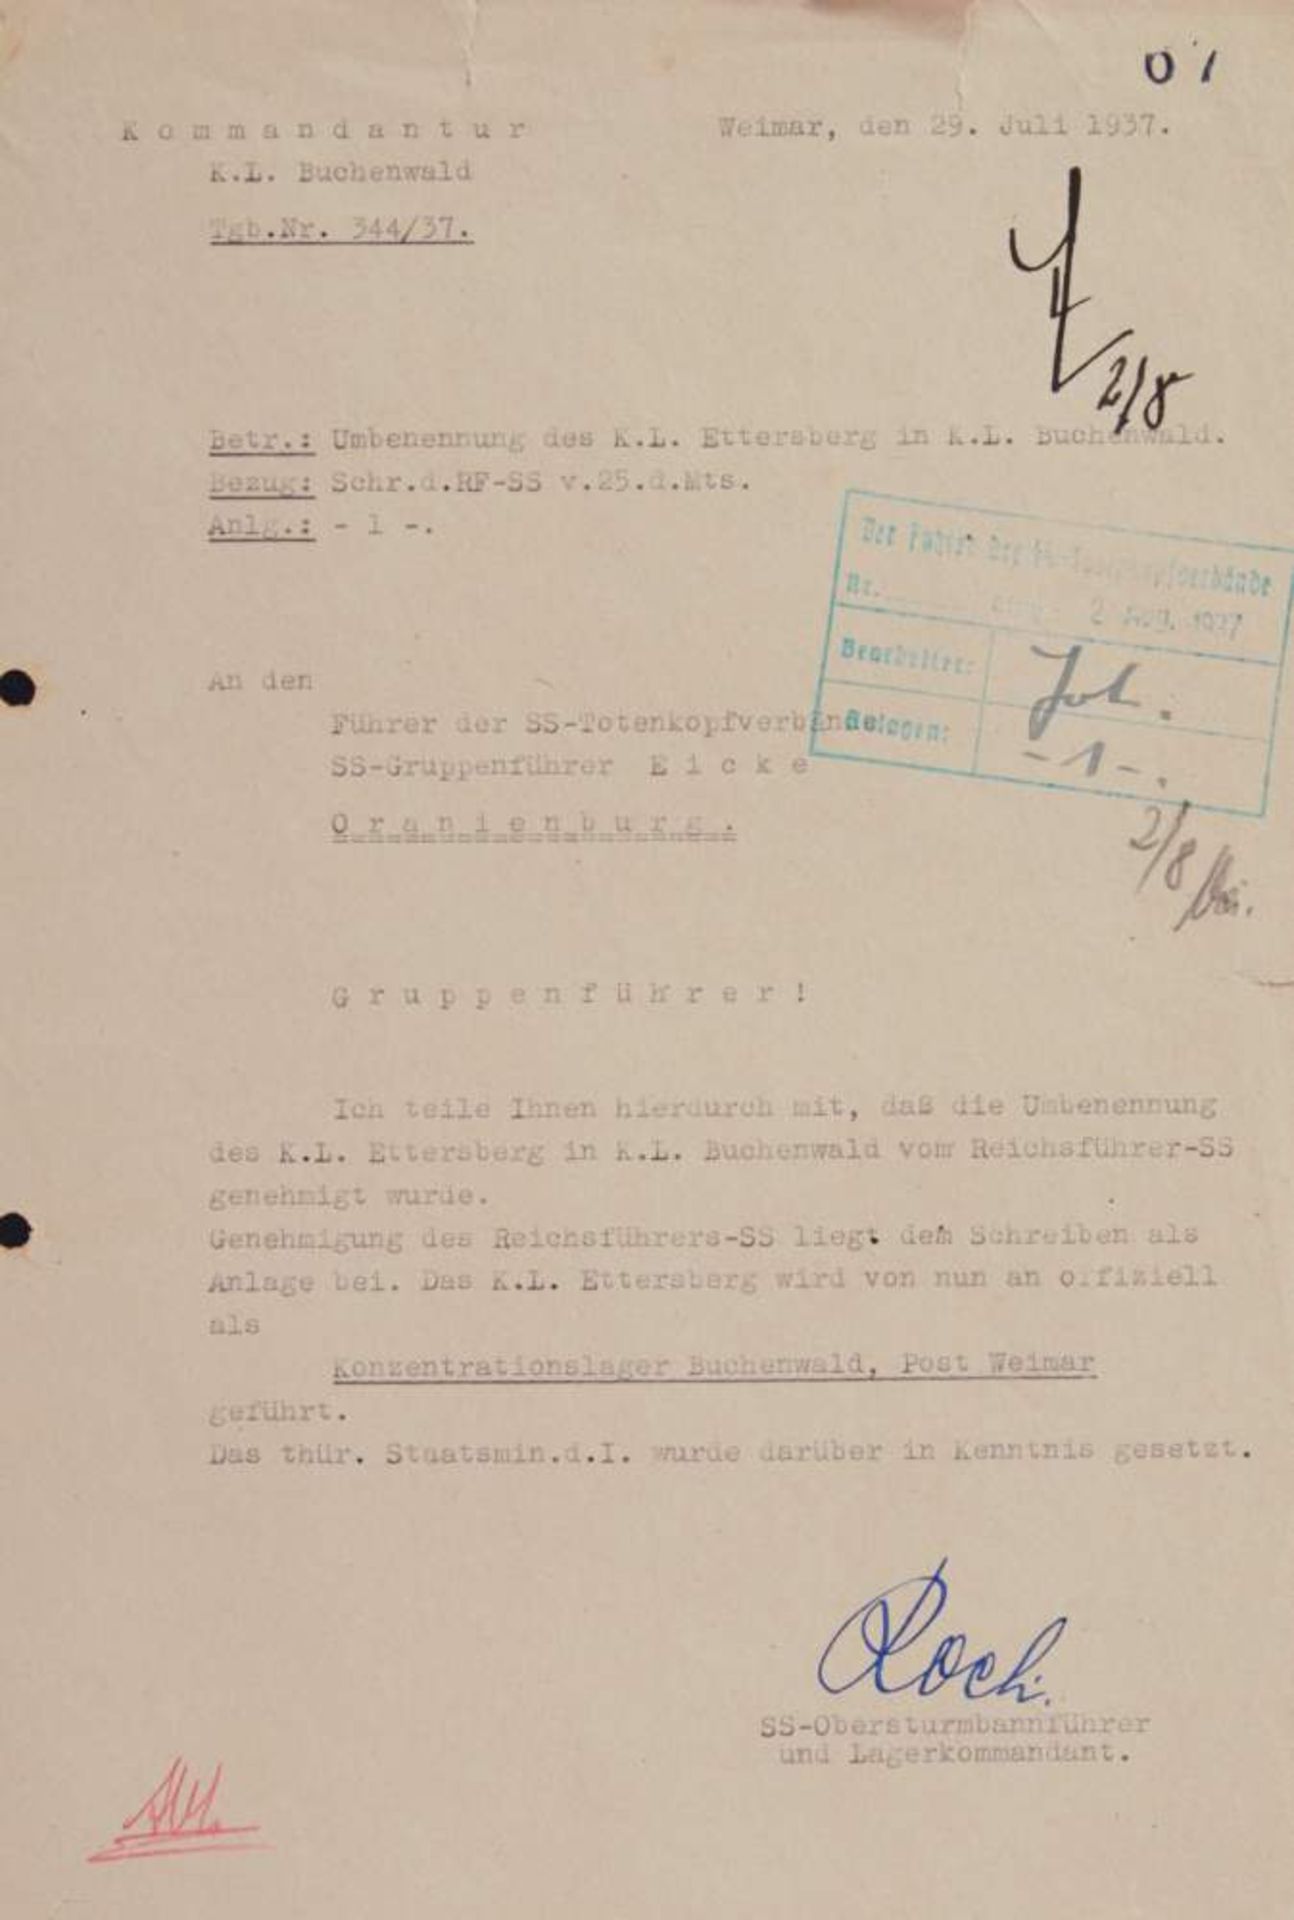 Koch, K. O., KZ-Kommandant (1897-1945). Masch. Brief mit e. U. Dat. Weimar, 29. 7. 1937. Fol. 1 S.